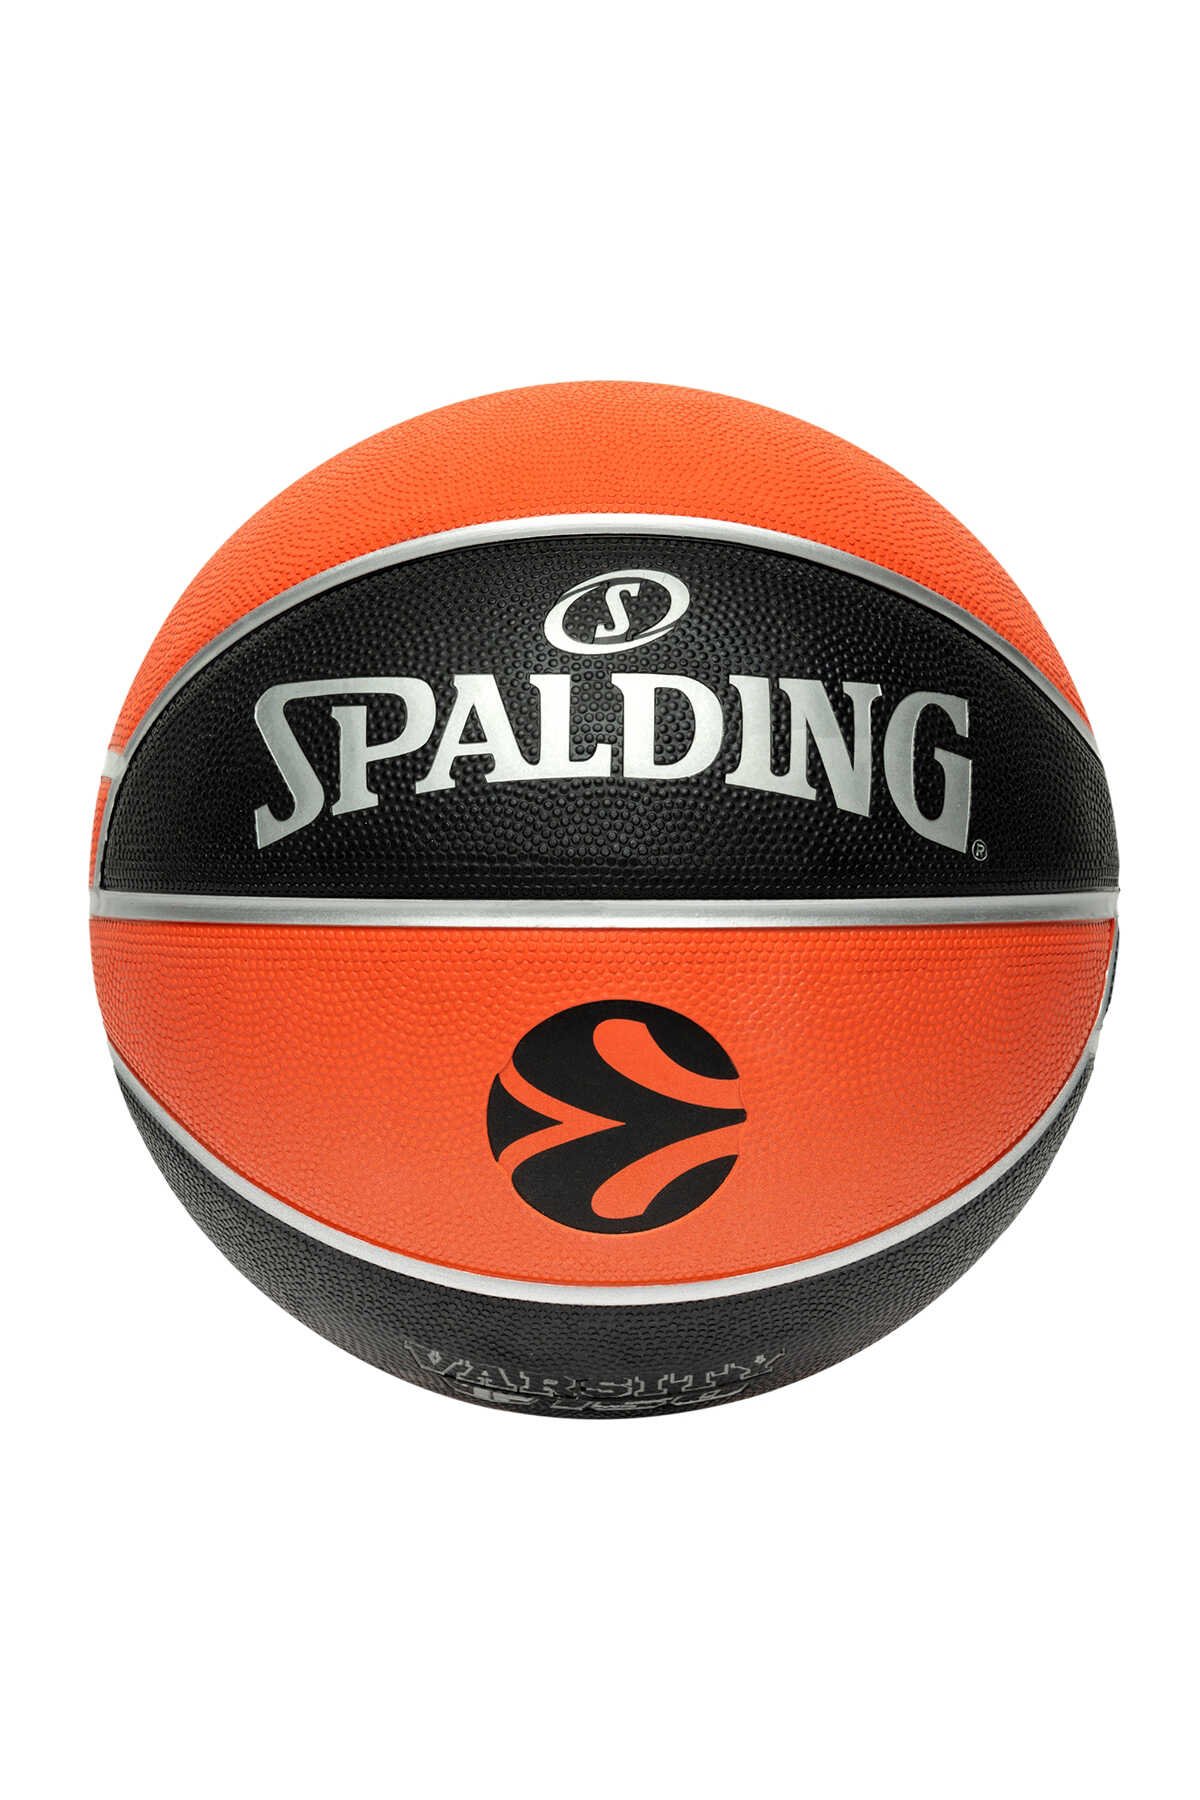 Spalding - Spalding TF-150 Basketbol Topu 2021 Size:7 (84-506Z) Basketbol Topları